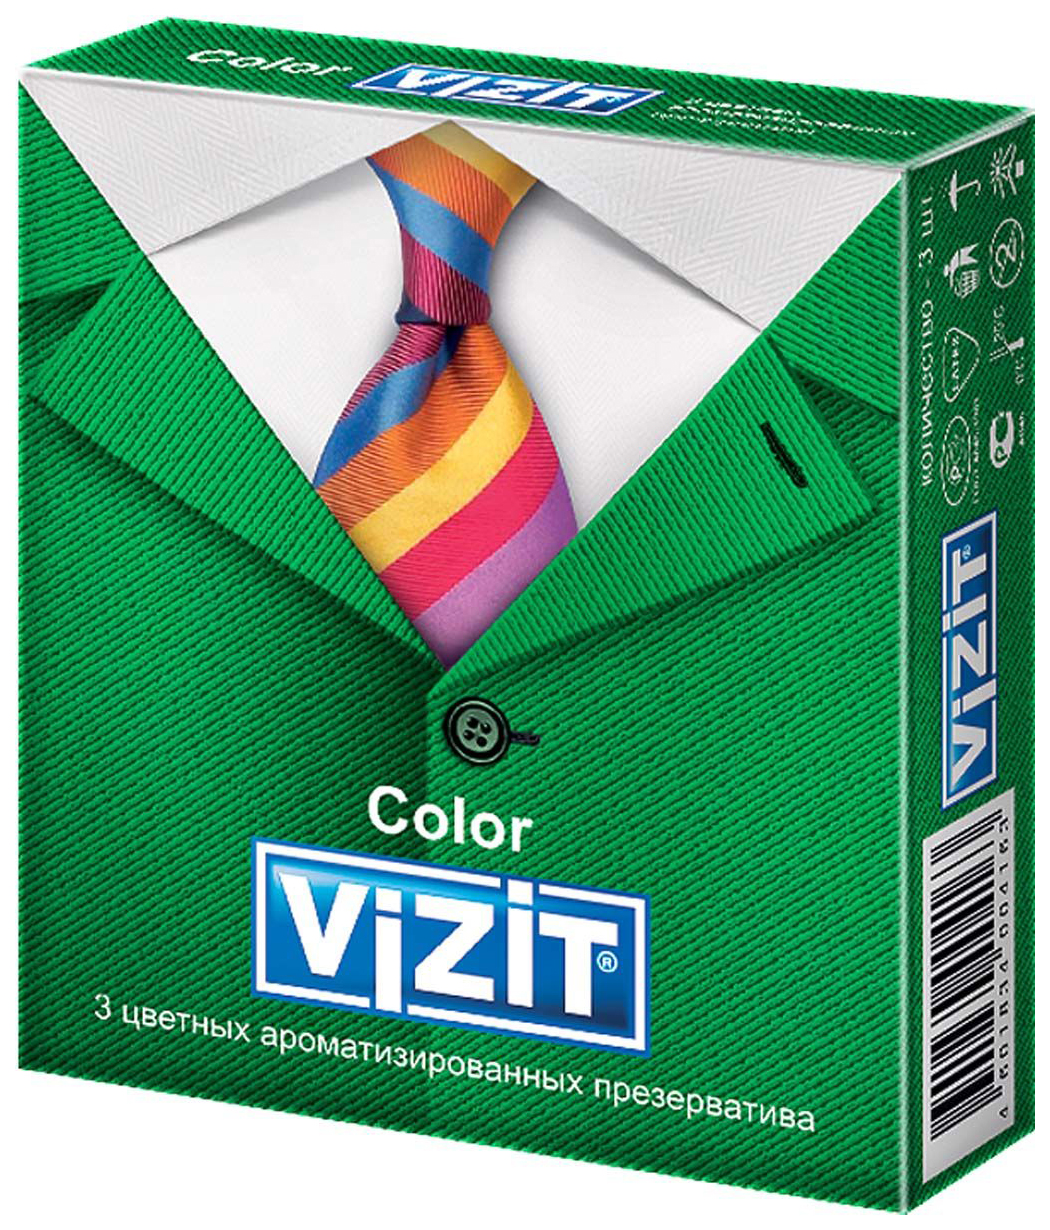 Презервативы Vizit Color ароматизированные 3 шт.  - купить со скидкой